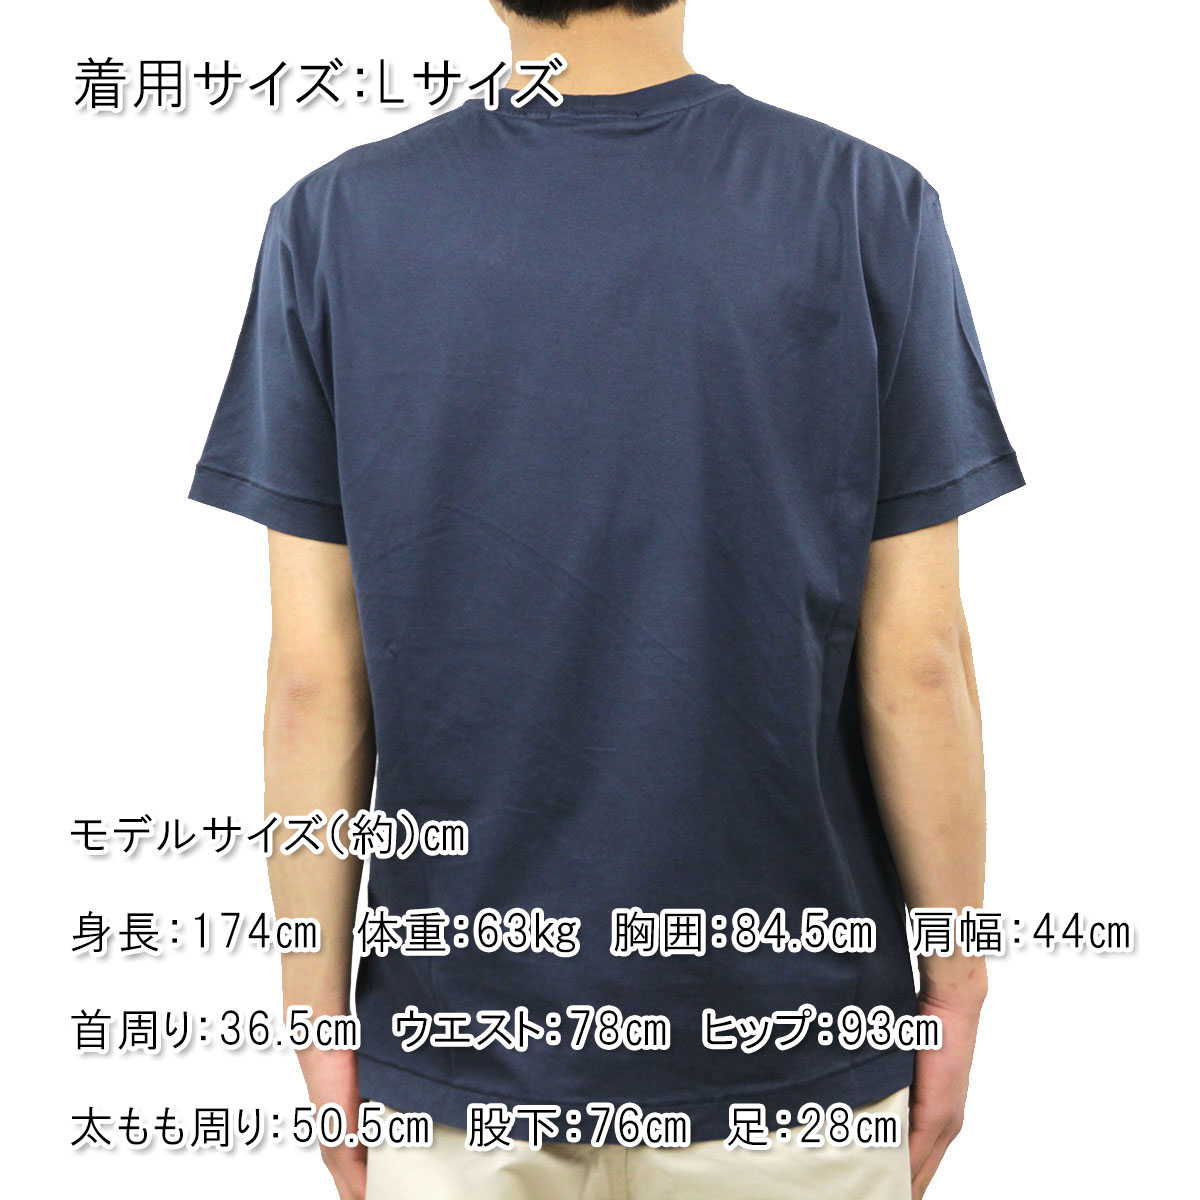 ストーンアイランド Tシャツ メンズ 正規品 STONE ISLAND 半袖Tシャツ T-SHIRT MARIN BLUE BLEU MARIN 24113 V0028